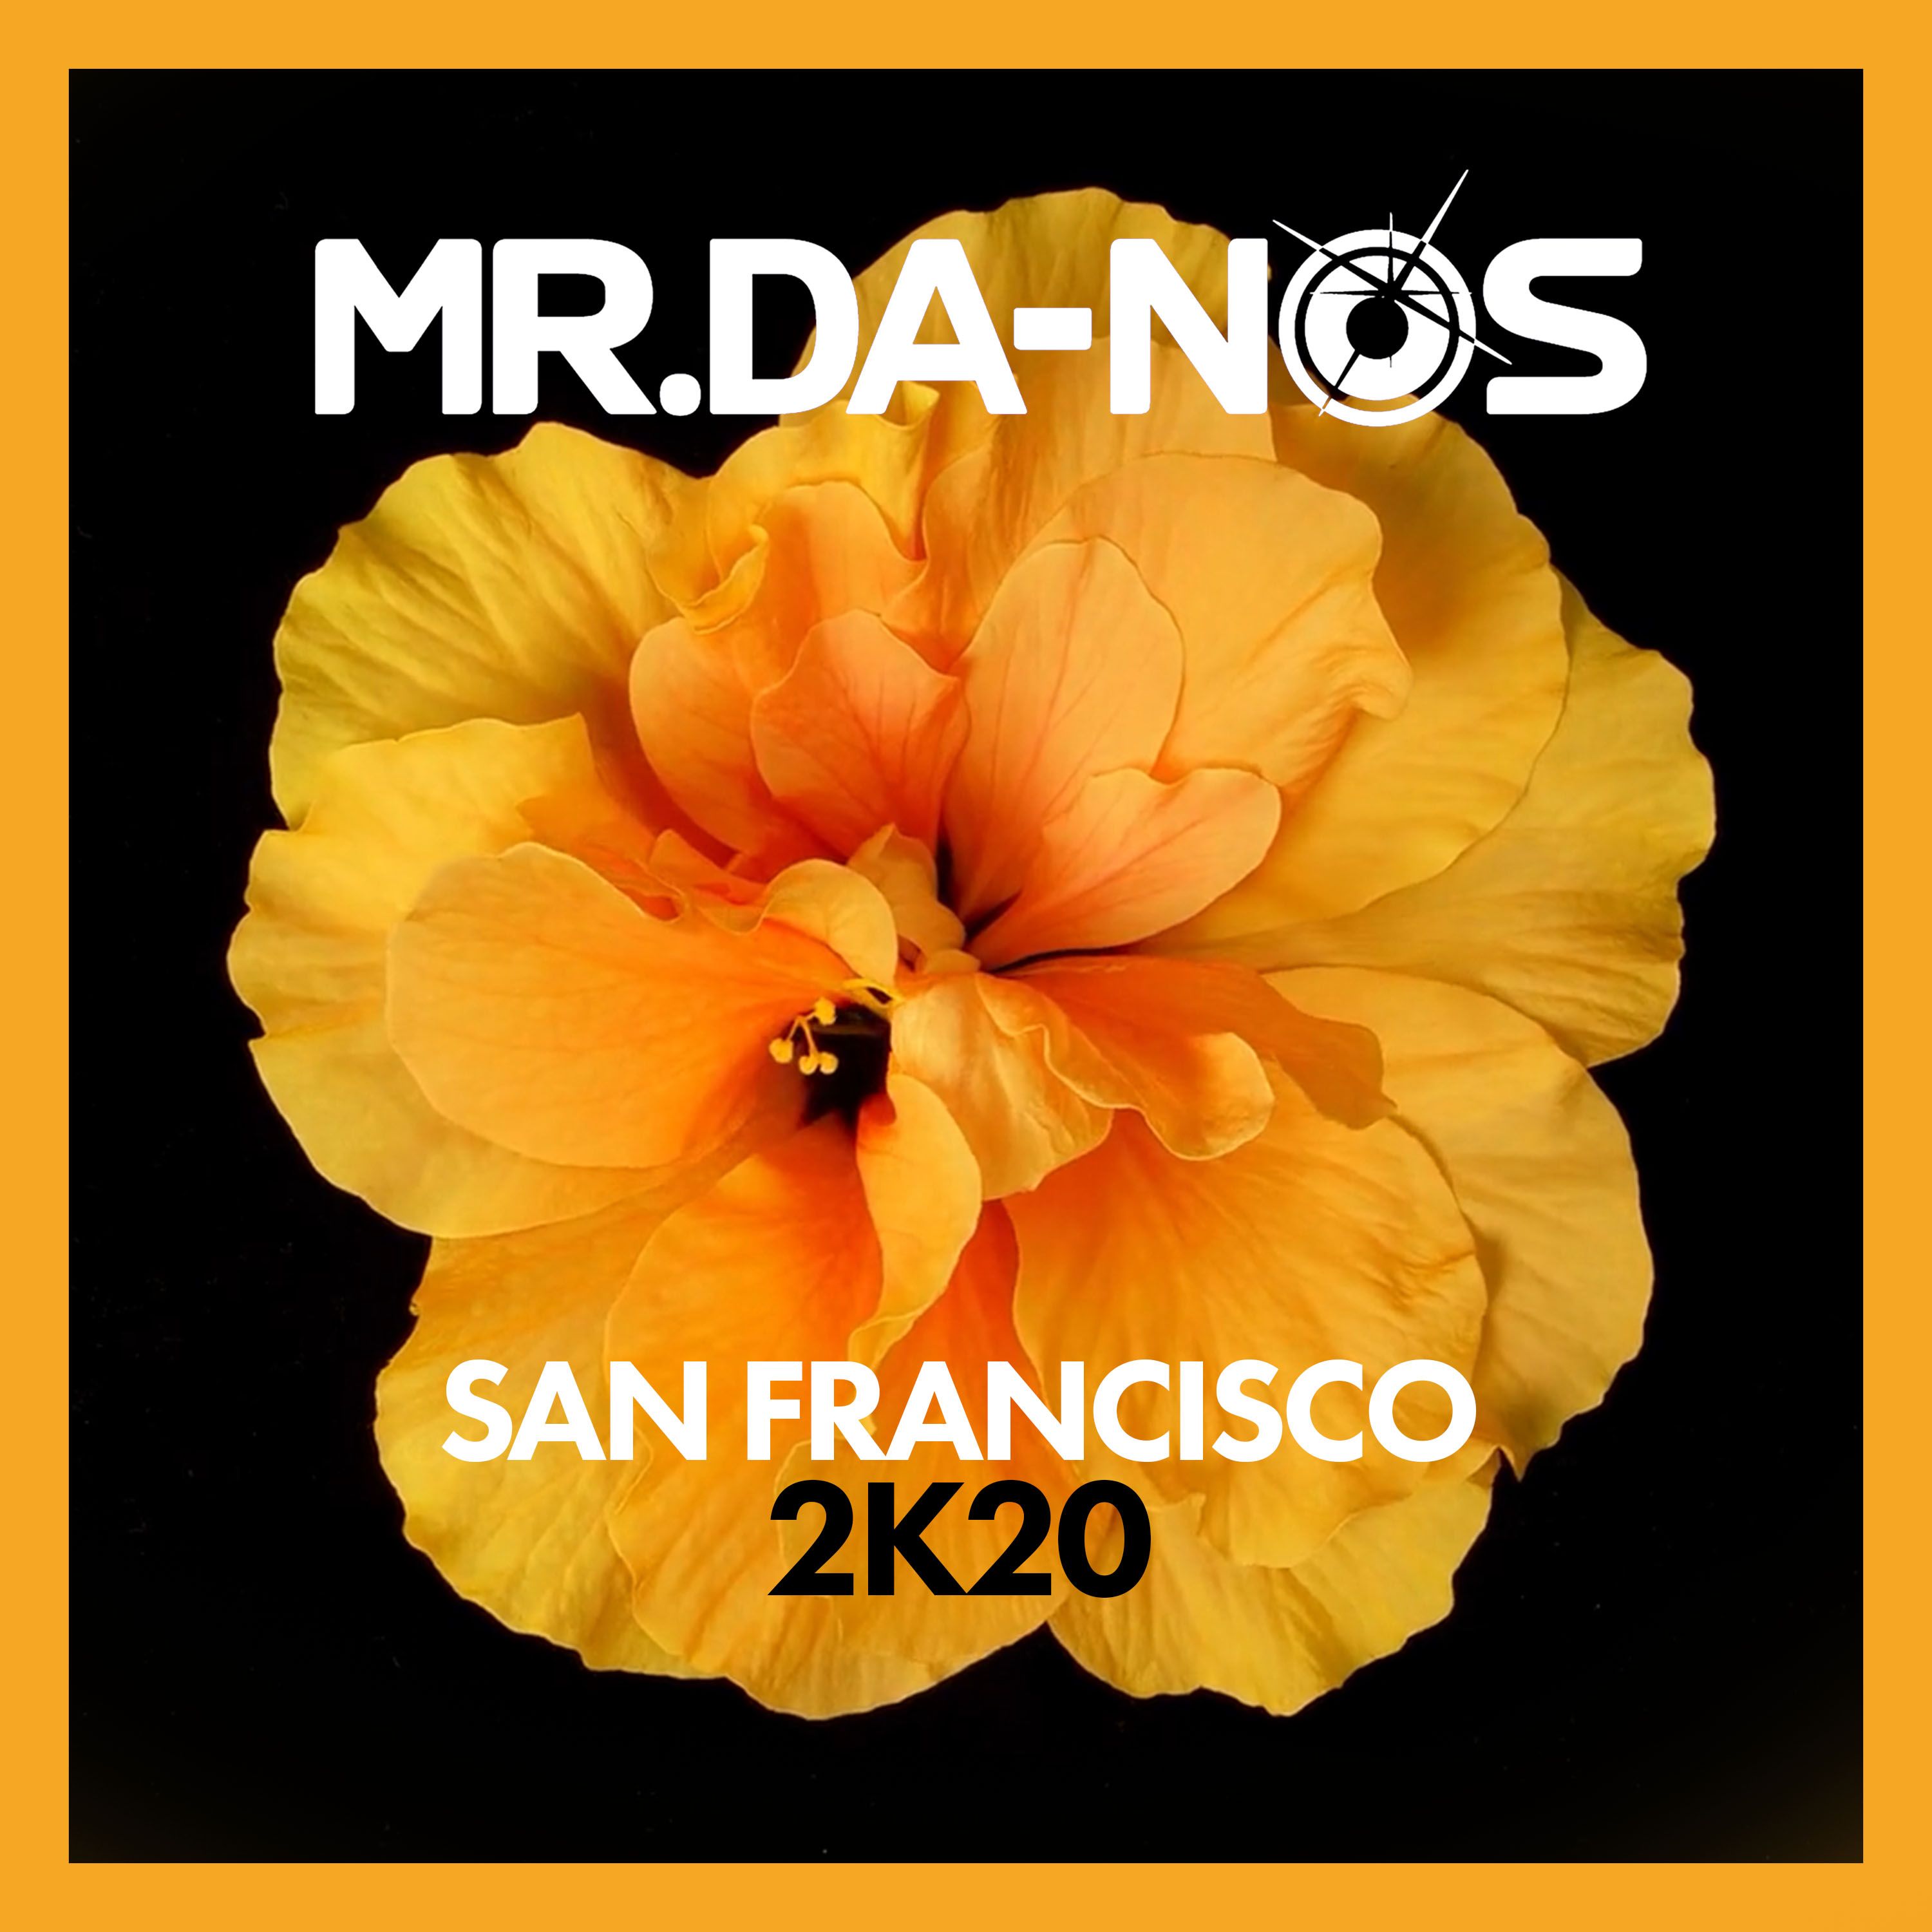 Sii mai Mr.Da-Nos - San Francisco 2K20